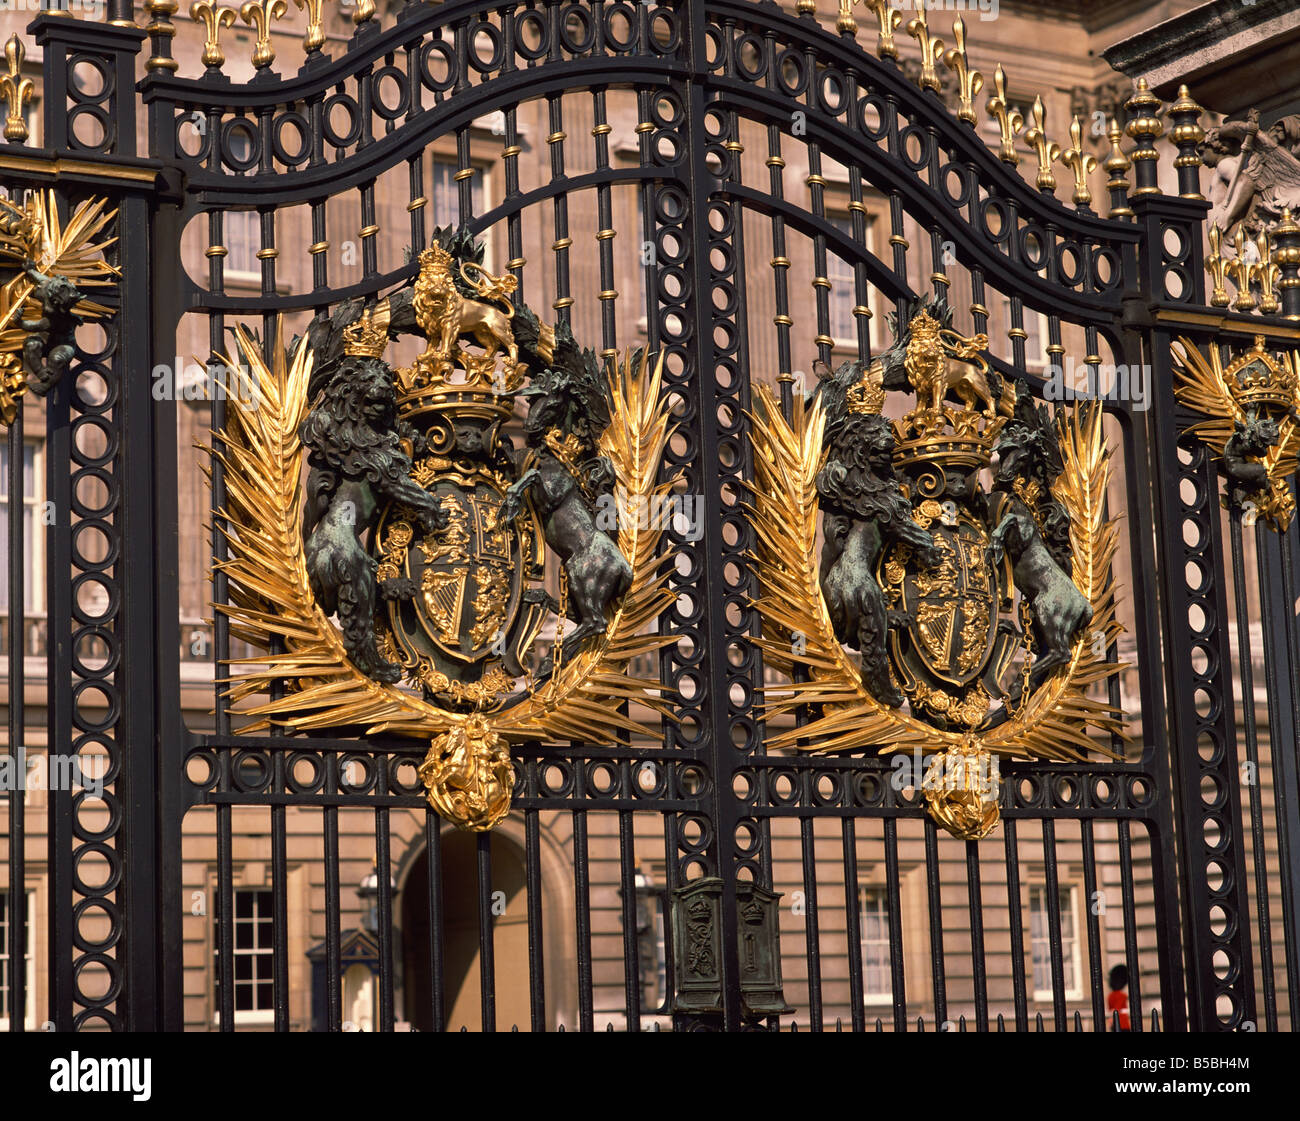 Entrance gates Buckingham Palace London England United Kingdom Europe Stock Photo